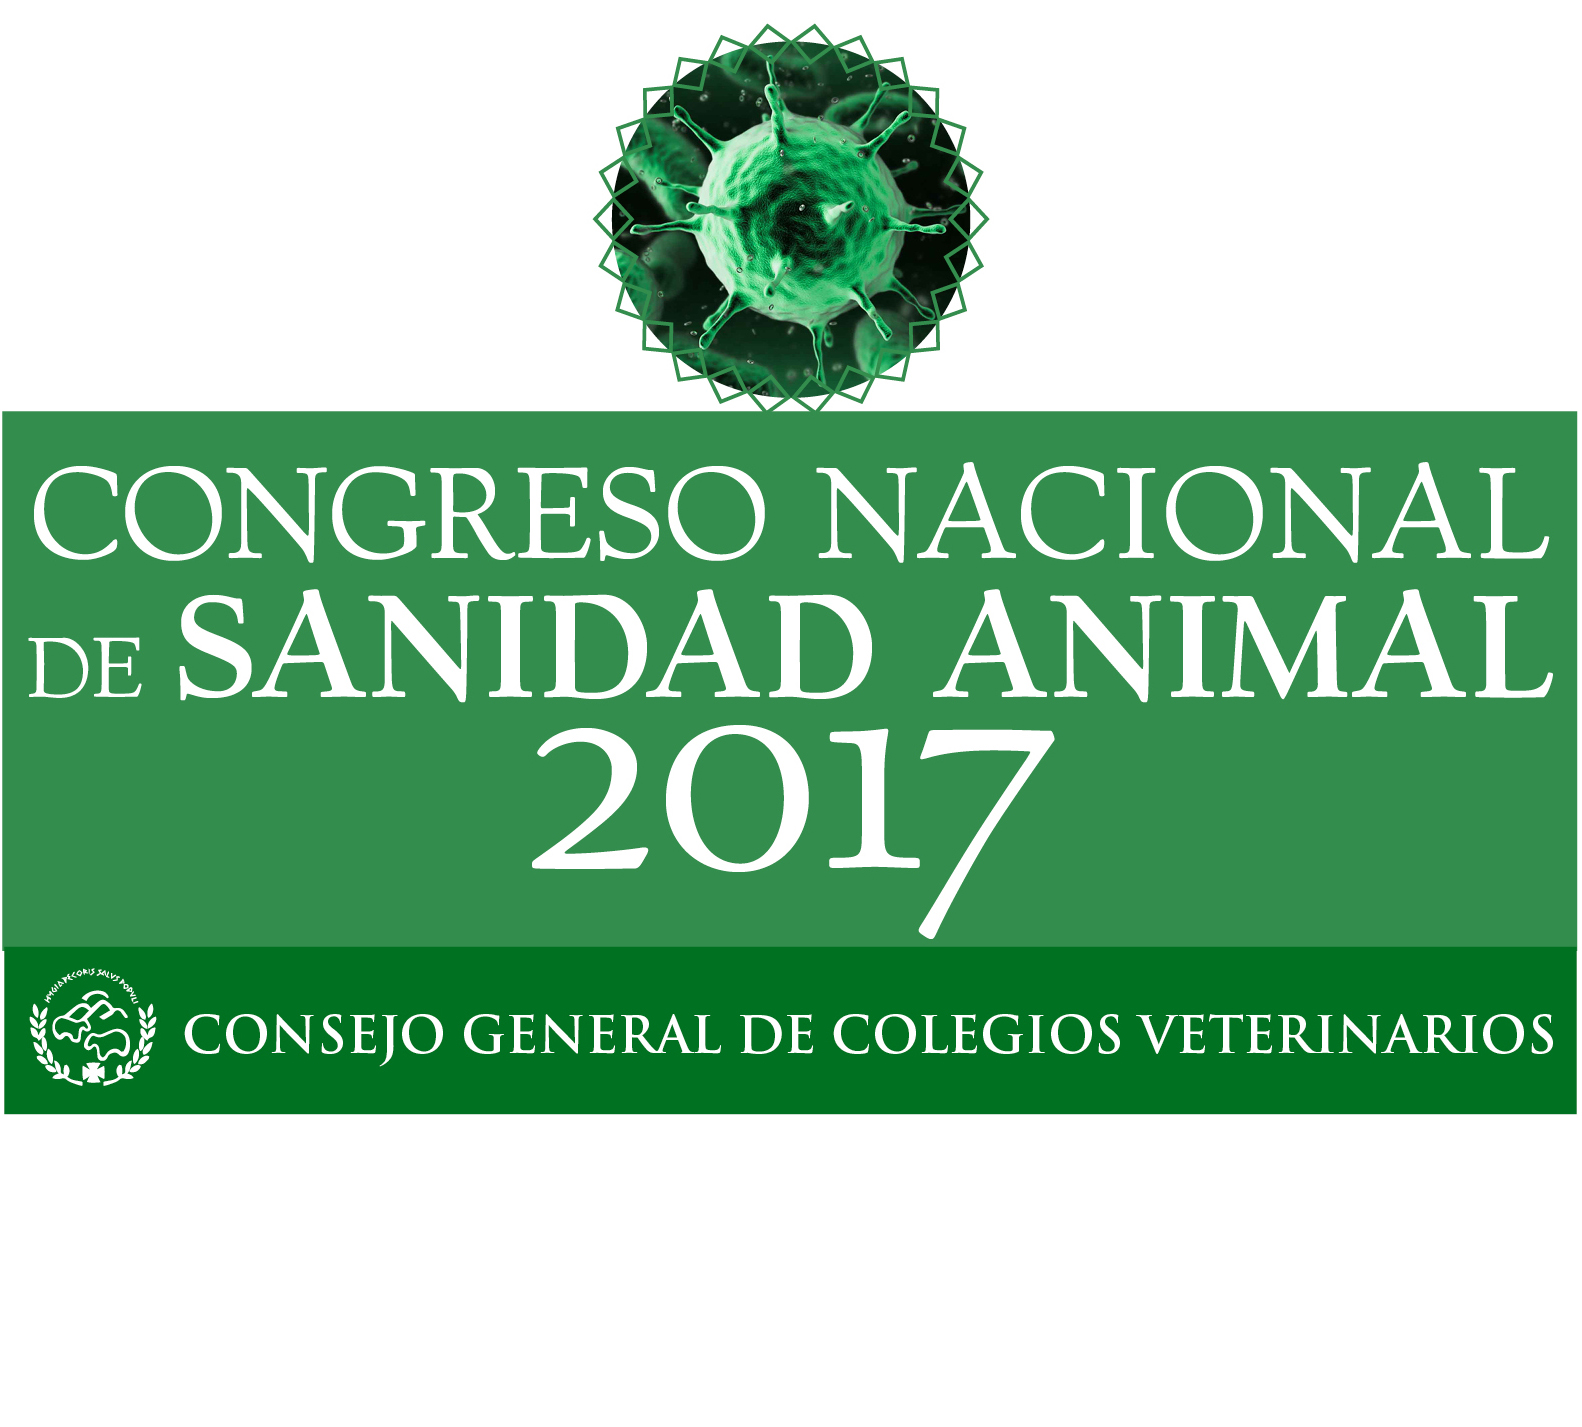 Esta tarde se inicia el Congreso Nacional de Sanidad Animal 2017